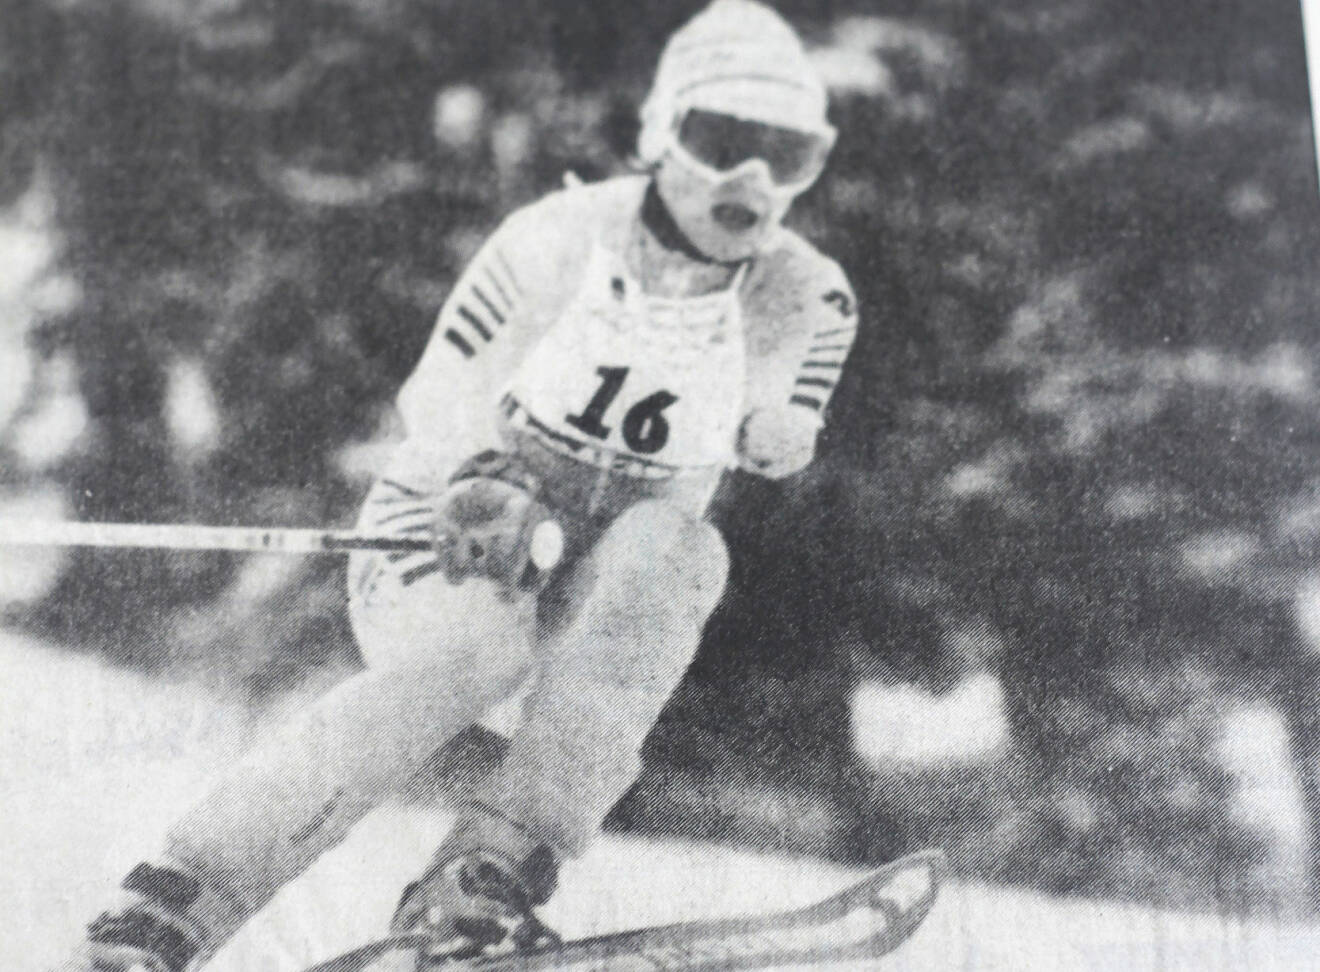 Tidningsklipp visar Gunilla i skidbacken när hon tävlade för Sverige i Paralympics och vann guld.